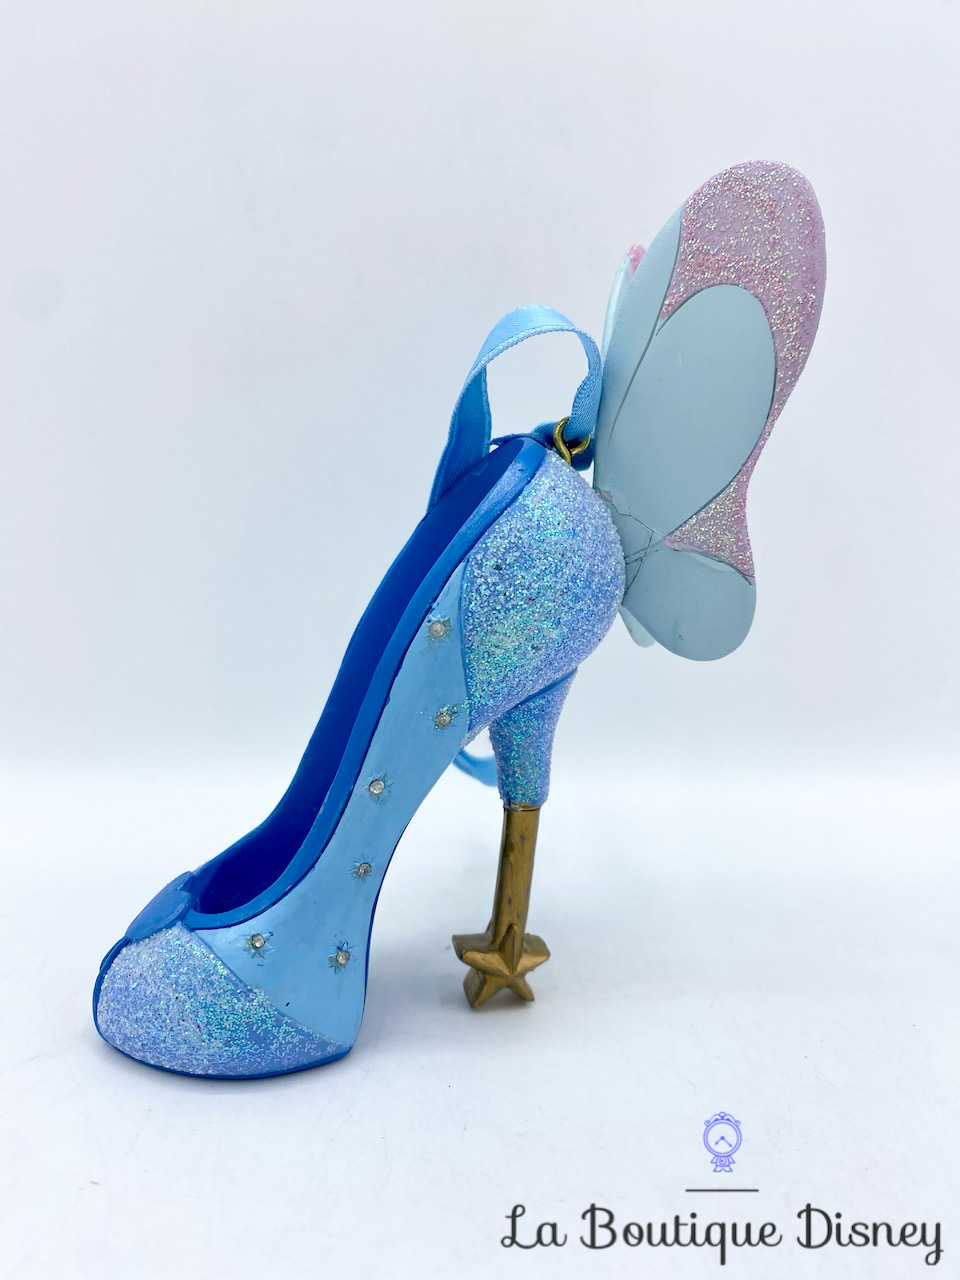 Ornement Noël Mini Chaussure Fée Bleue décorative Disney Parks Disneyland Pinocchio Runway Shoe boule suspension